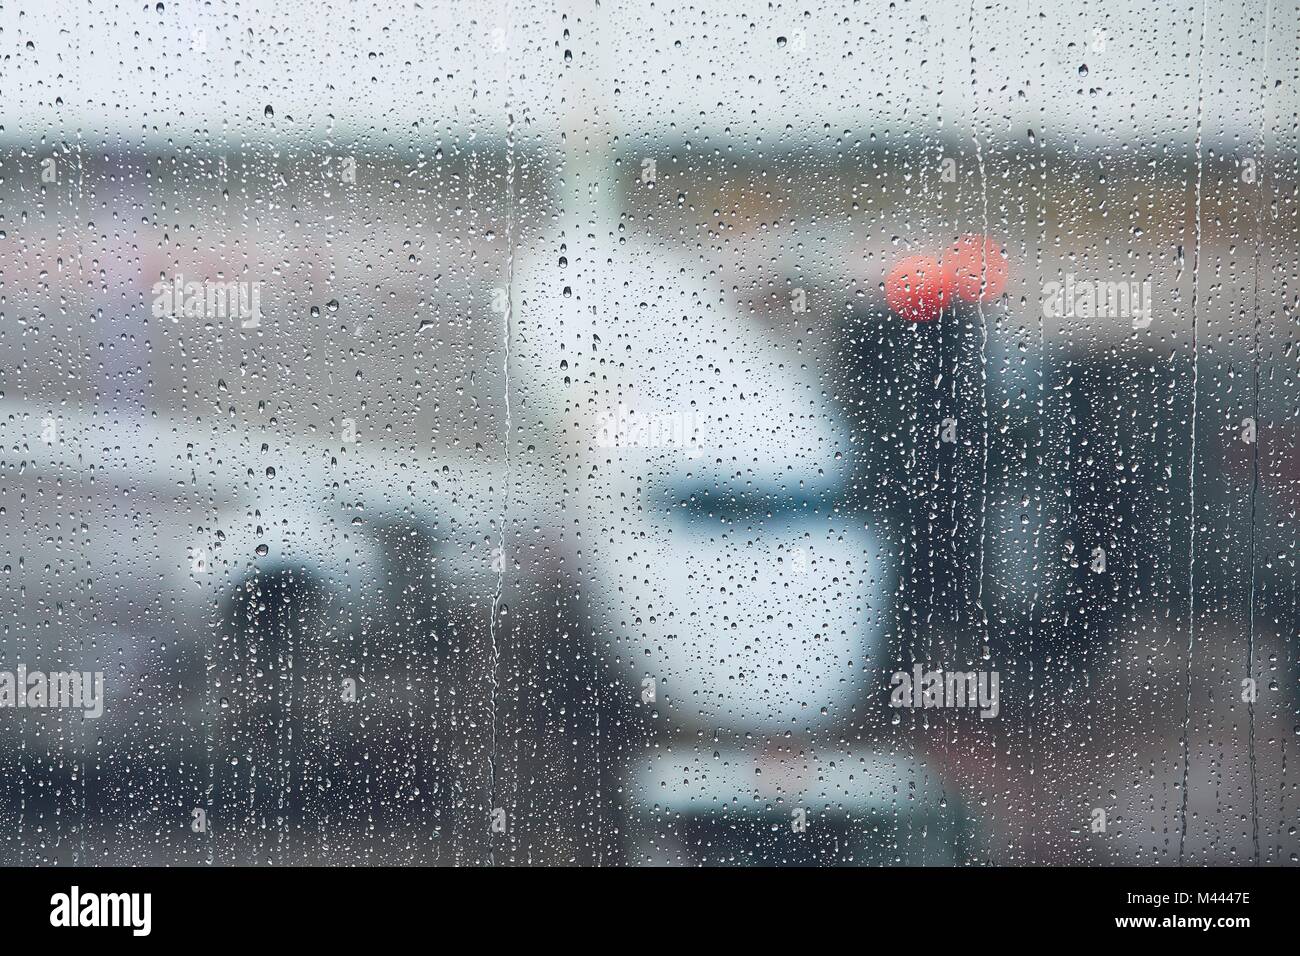 Sturm am Flughafen. Blick auf das Flugzeug durch Regen fällt. Themen Wetter und Verzögerung oder Flug abgesagt. Stockfoto